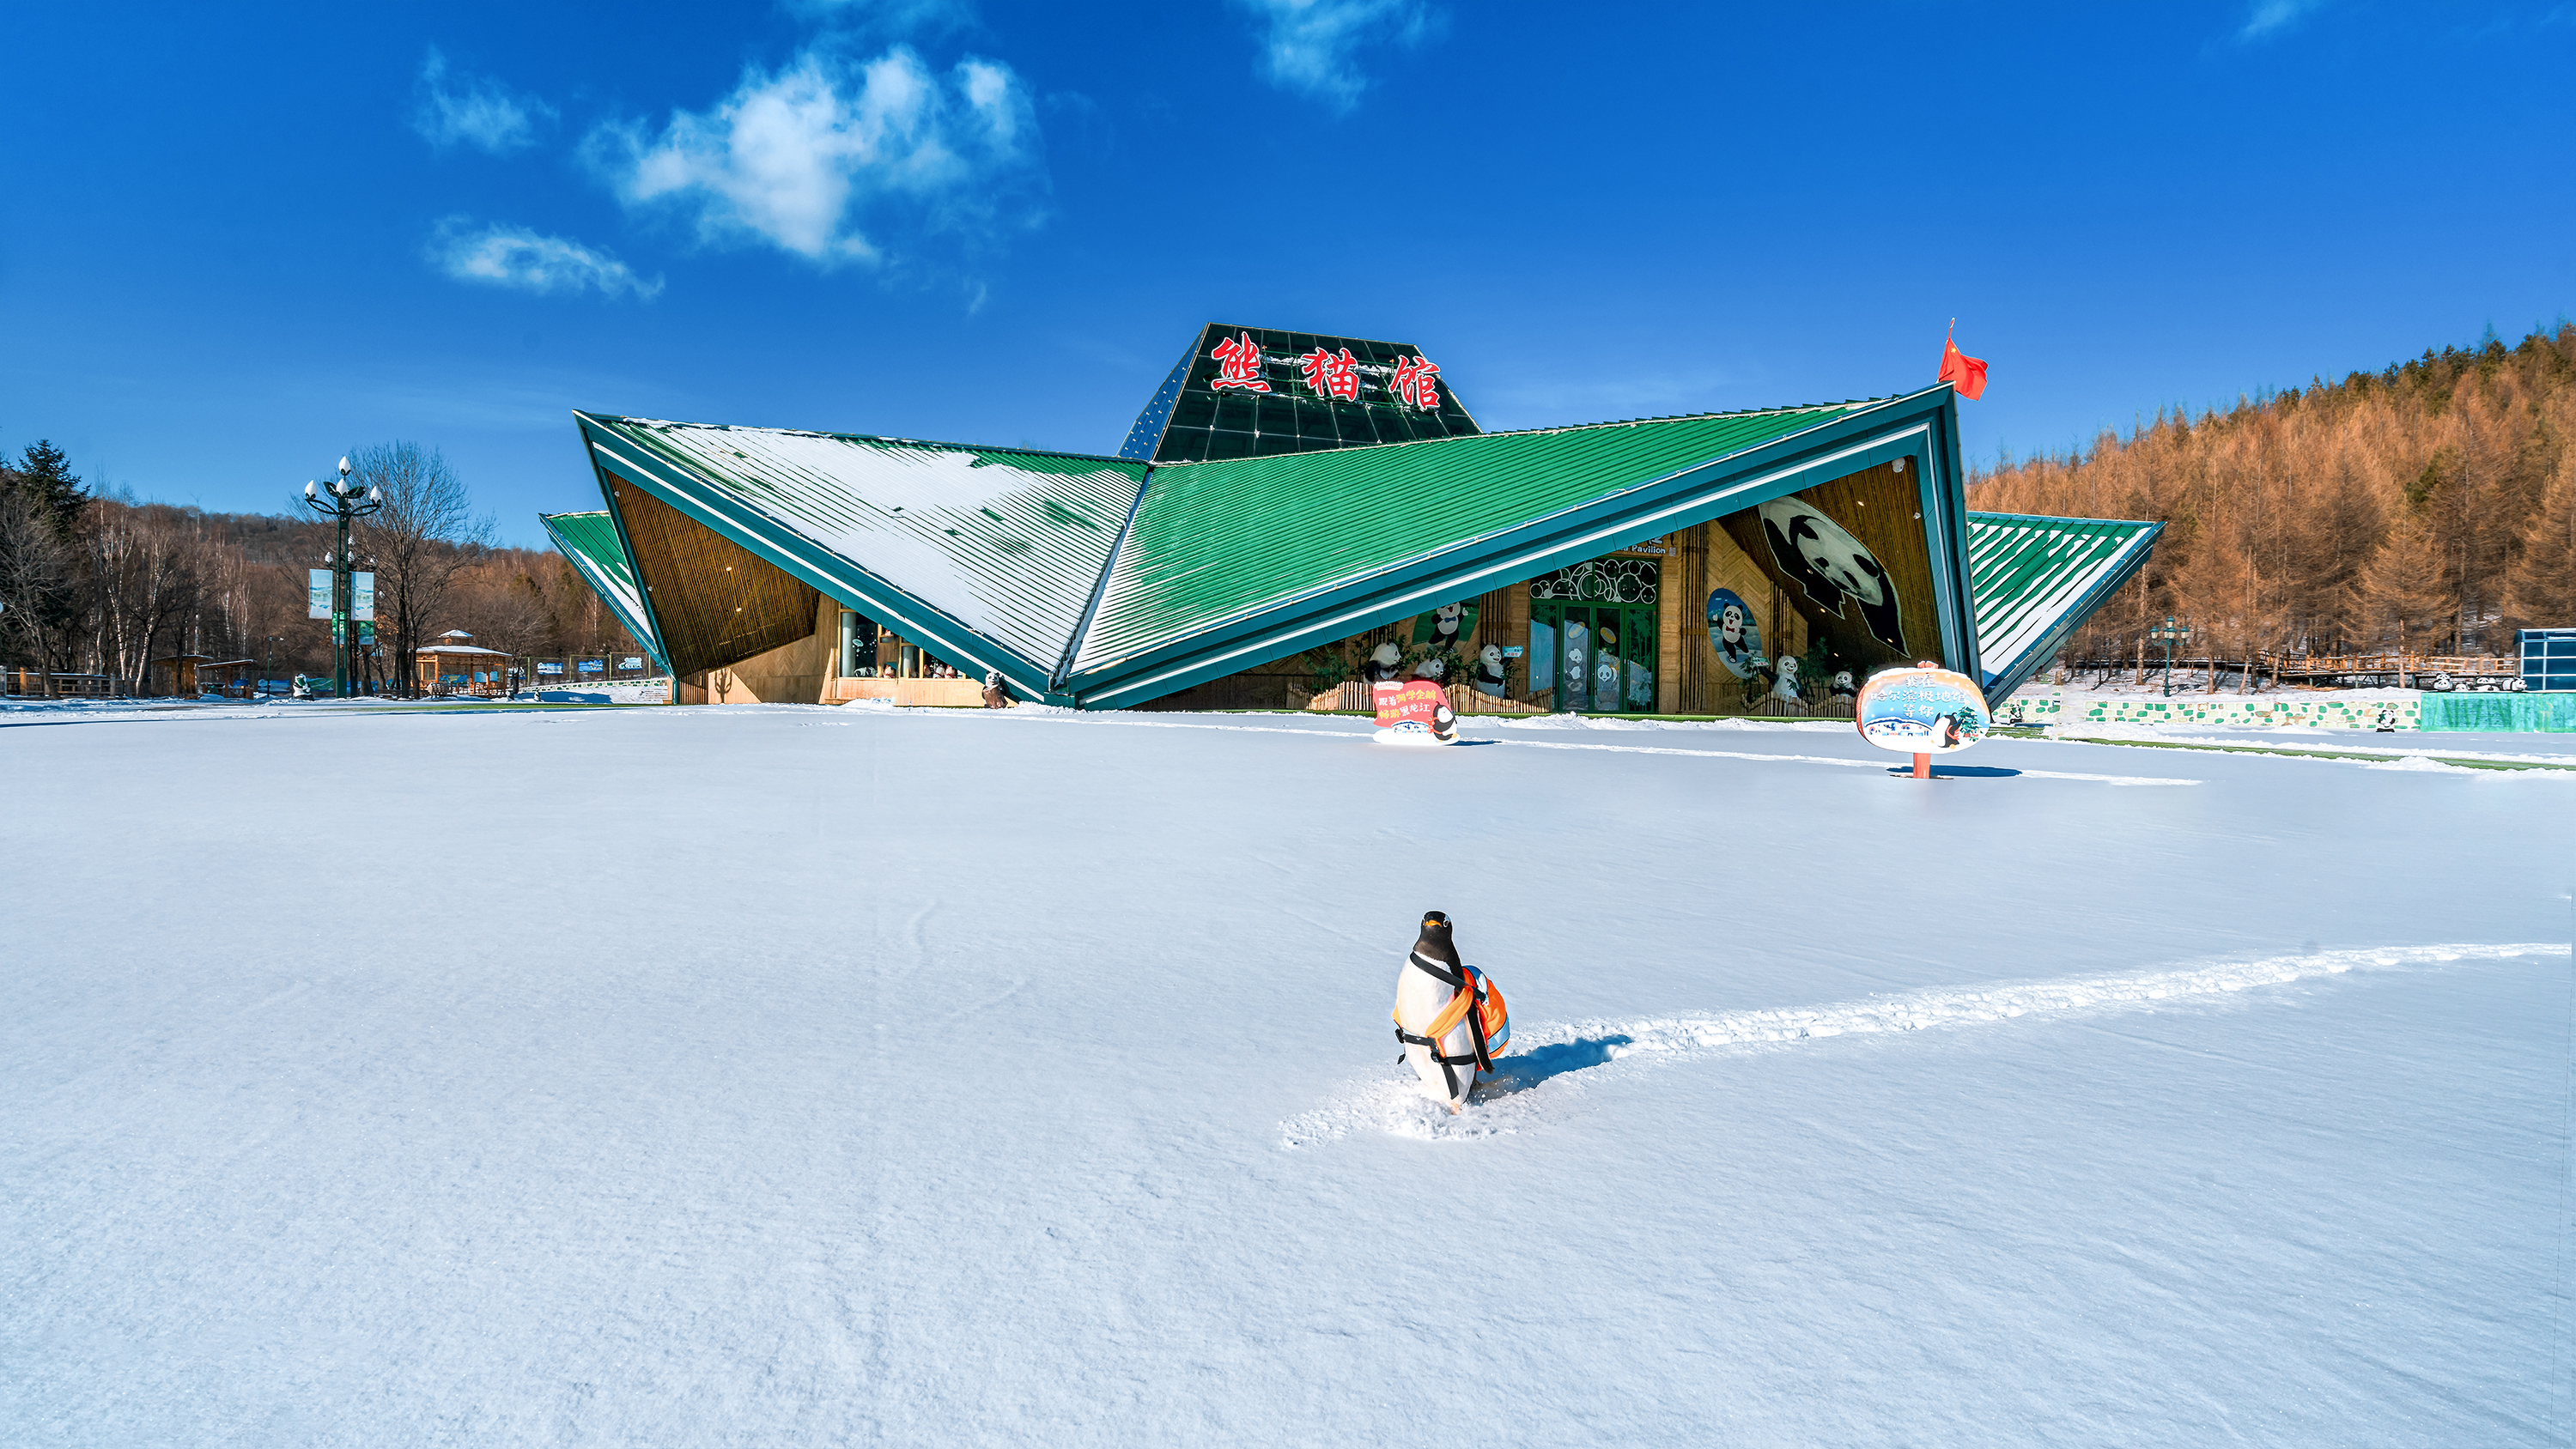 亚布力滑雪度假区成为了中国首批体育旅游示范基地,区域内拥有2家5s级